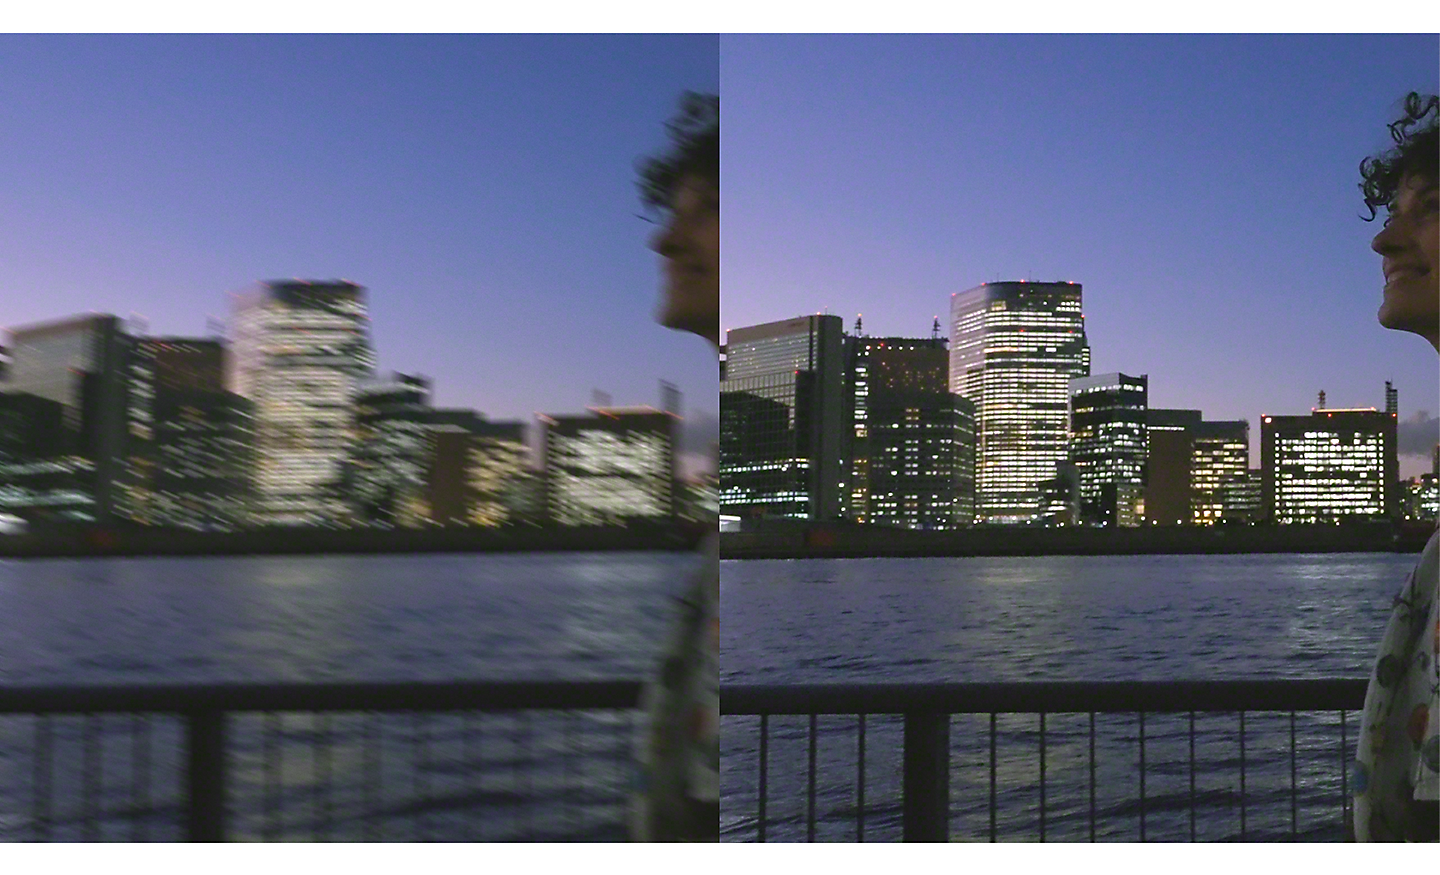 Zweifache Darstellung einer Stadtlandschaft bei Nacht – das linke Bild ist verschwommen, das rechte scharf